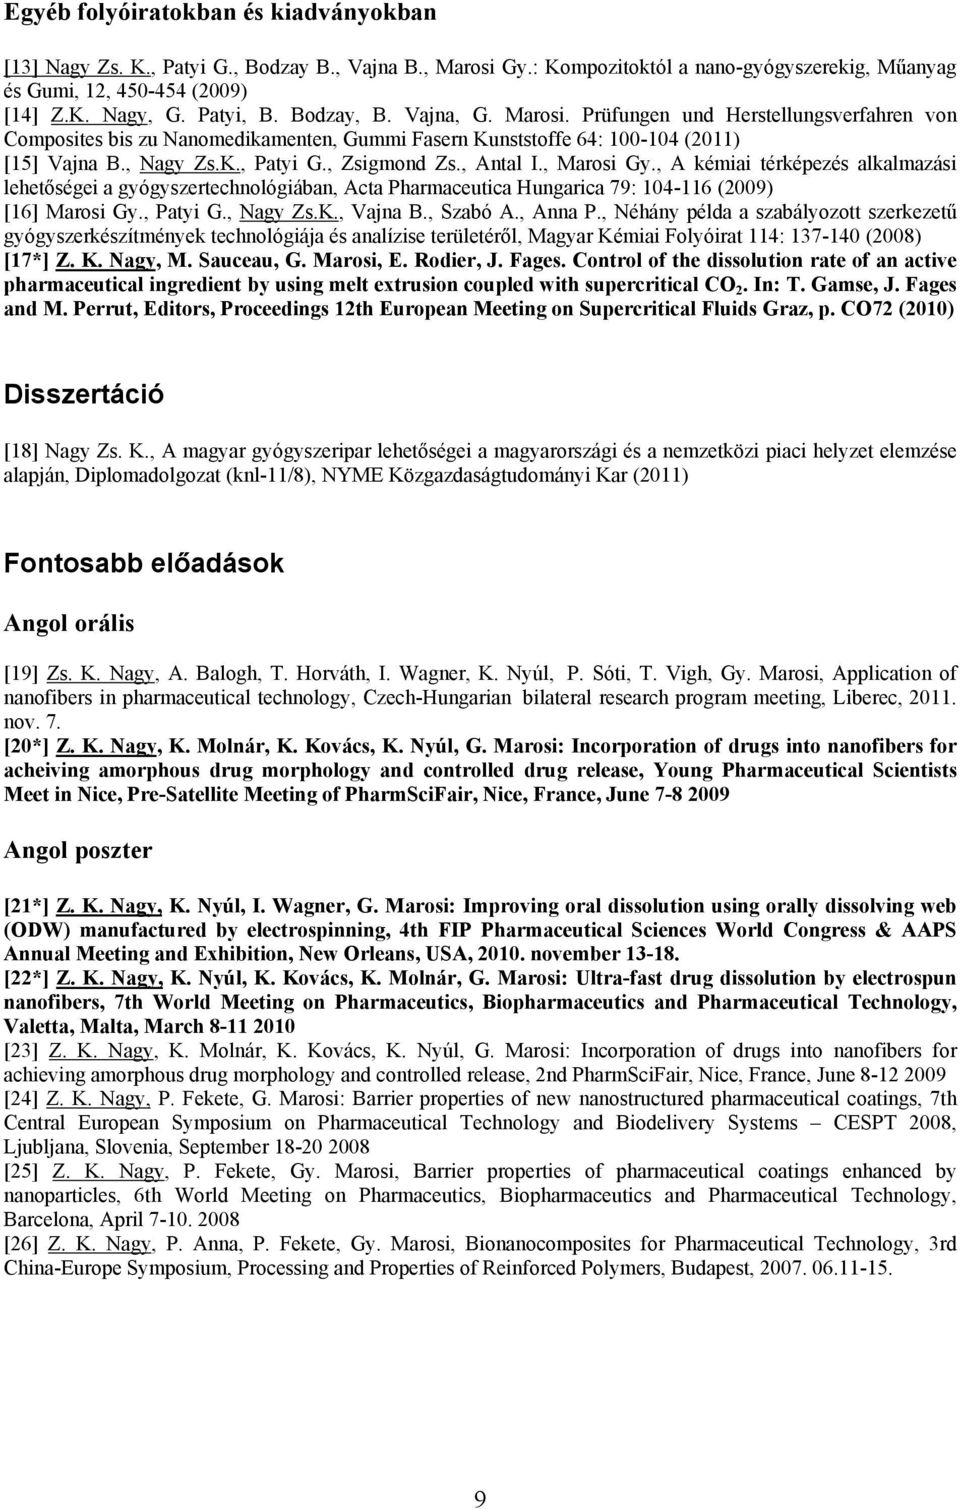 , Antal I., Marosi Gy., A kémiai térképezés alkalmazási lehetőségei a gyógyszertechnológiában, Acta Pharmaceutica Hungarica 79: 104-116 (2009) [16] Marosi Gy., Patyi G., Nagy Zs.K., Vajna B., Szabó A.